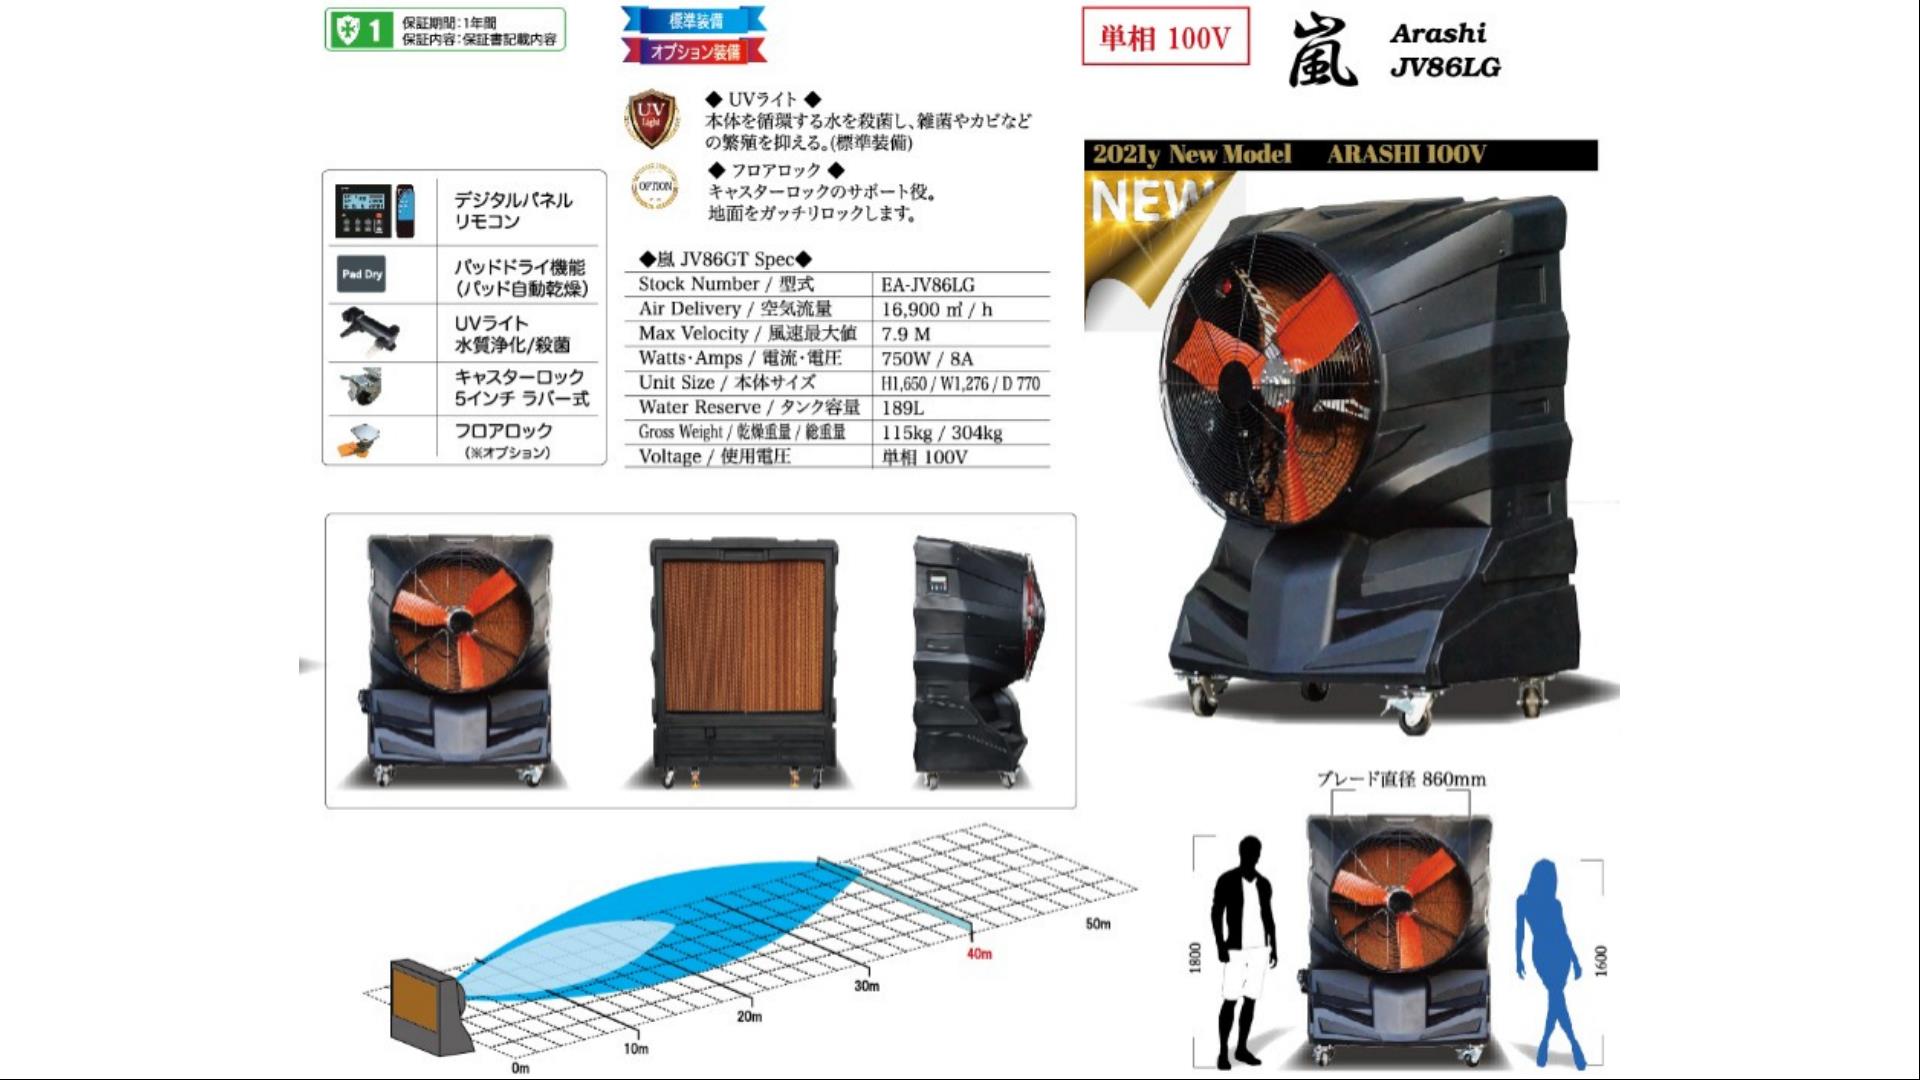 大型冷風機 嵐 あらし Arashi Jv86lg 大型冷風機 業務用 アースブロージャパン レンタルや倉庫